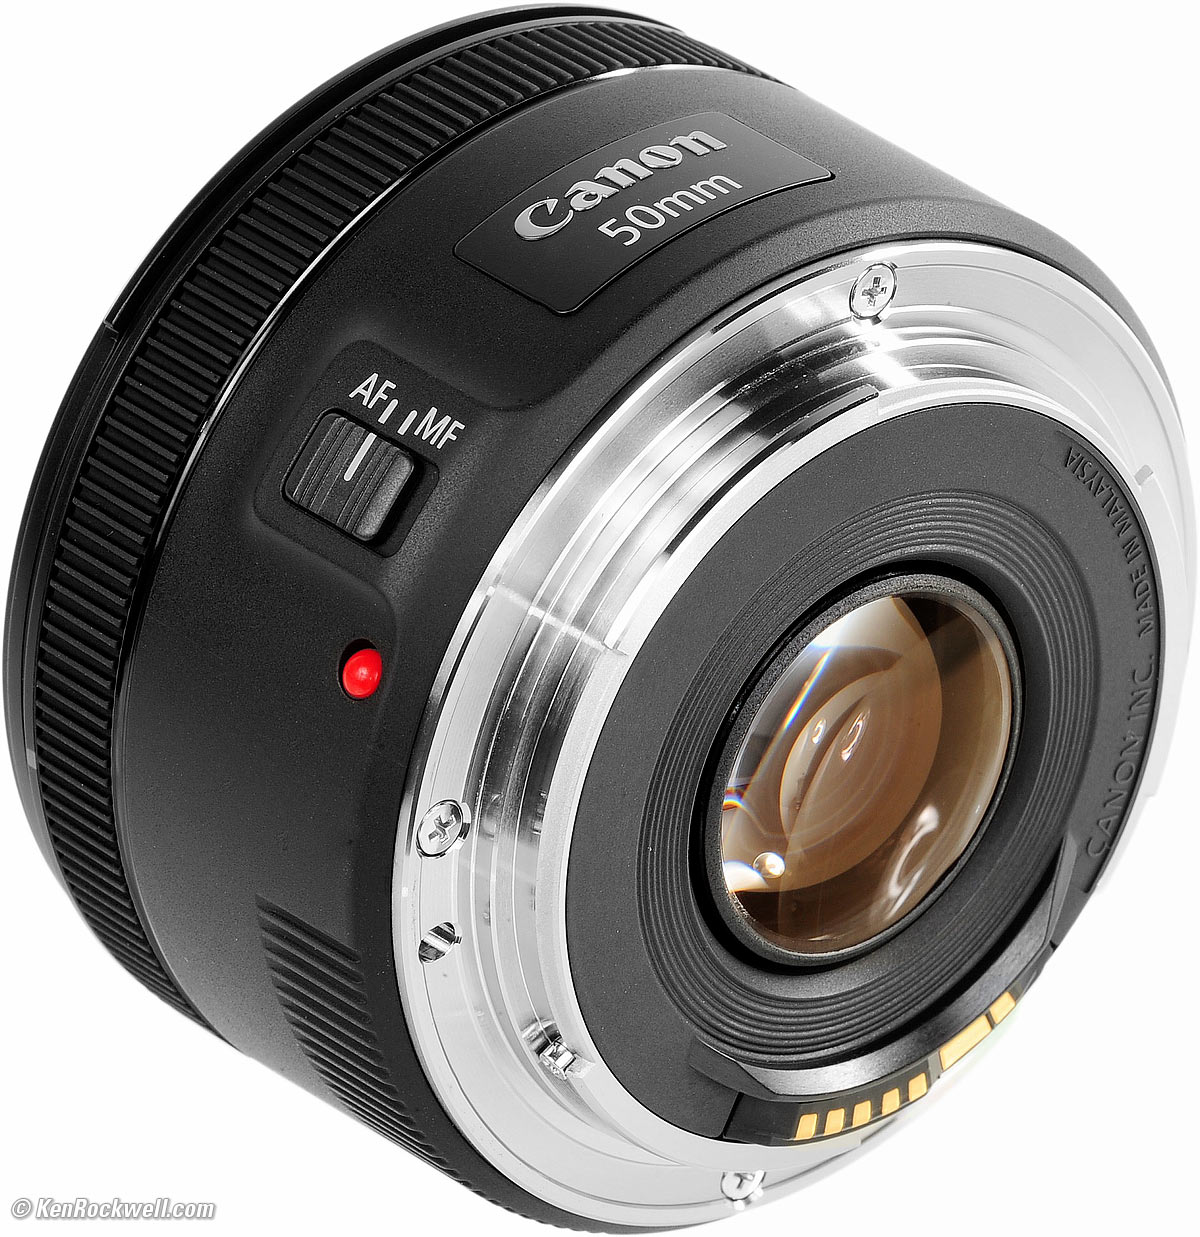 カメラ レンズ(単焦点) Canon 50mm f/1.8 STM Review